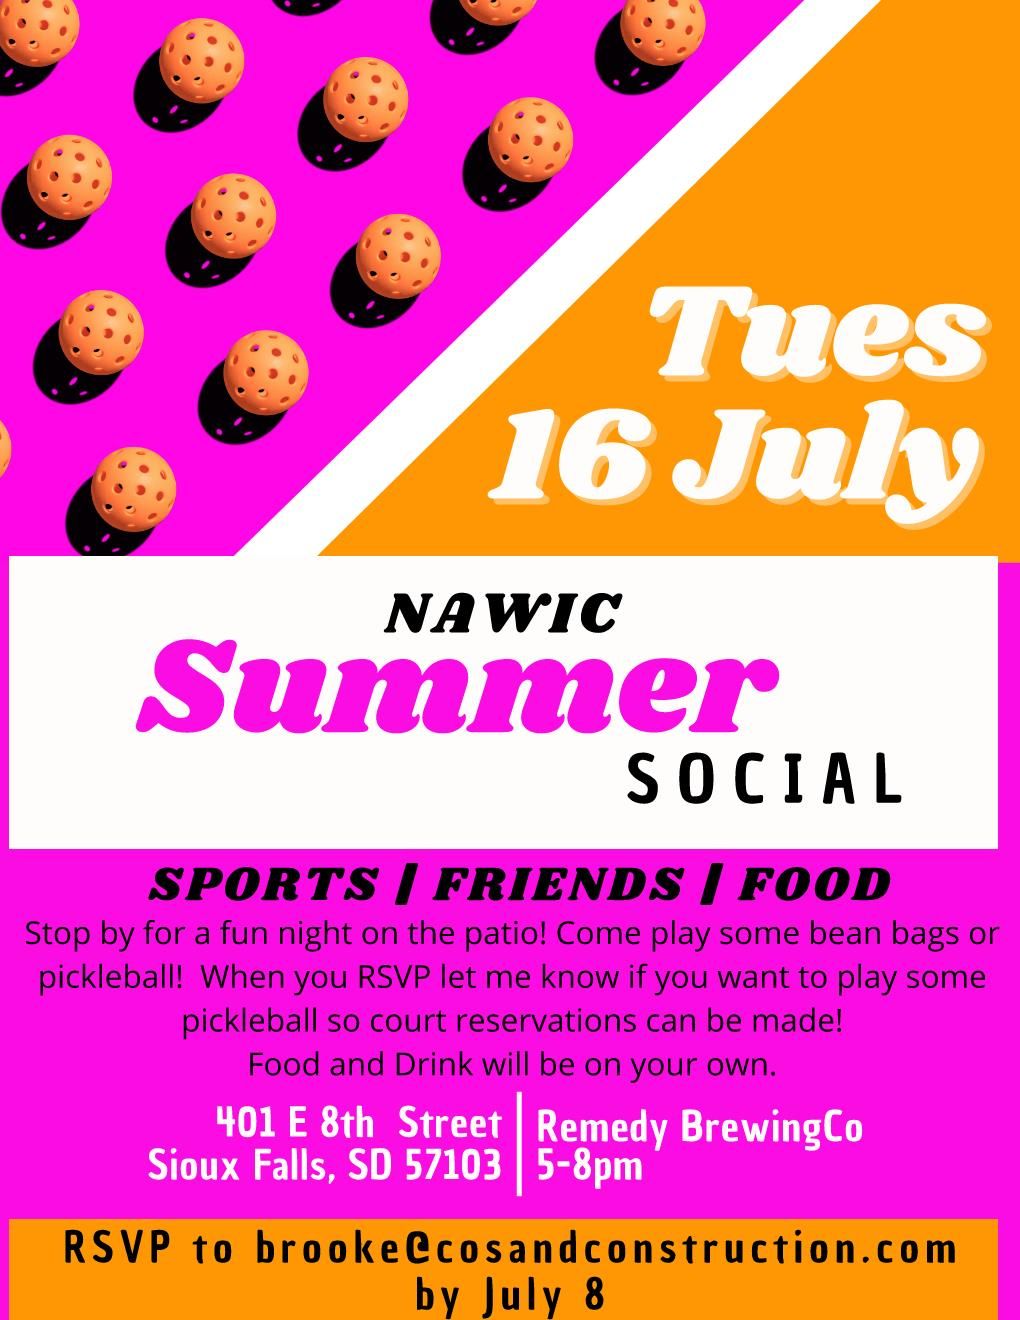 NAWIC Summer Social